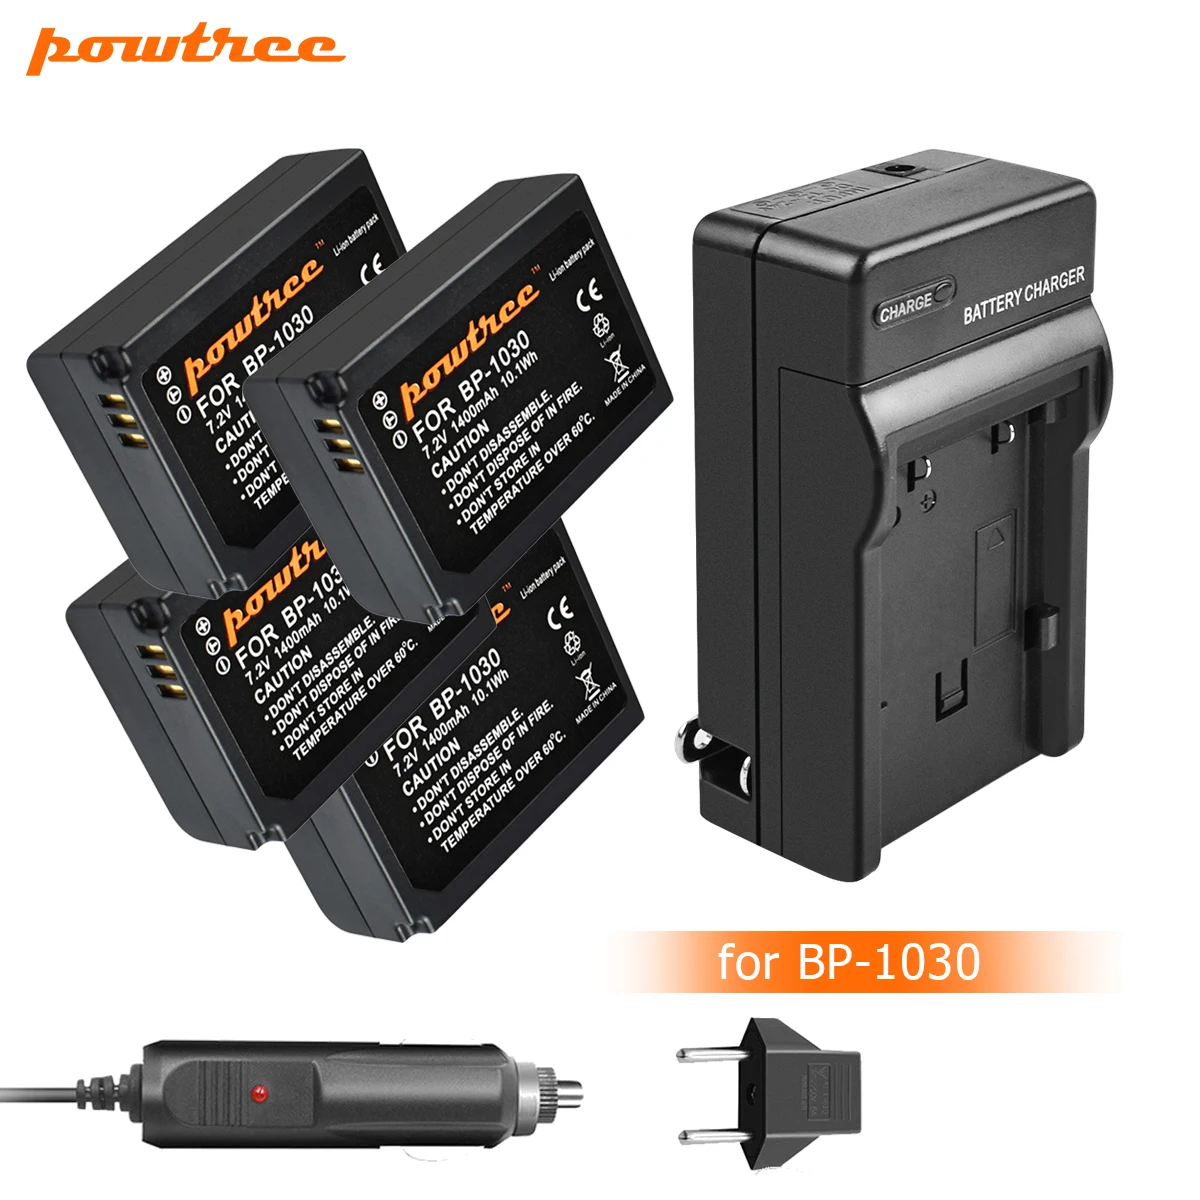 Powtree 7,2 V 1400mAh BP-1030 BP1030 BP1130 BP-1130 Аккумулятор для камеры+ зарядное устройство для samsung NX200 Аккумулятор для камеры L10 - Цвет: 4X Battery Charger